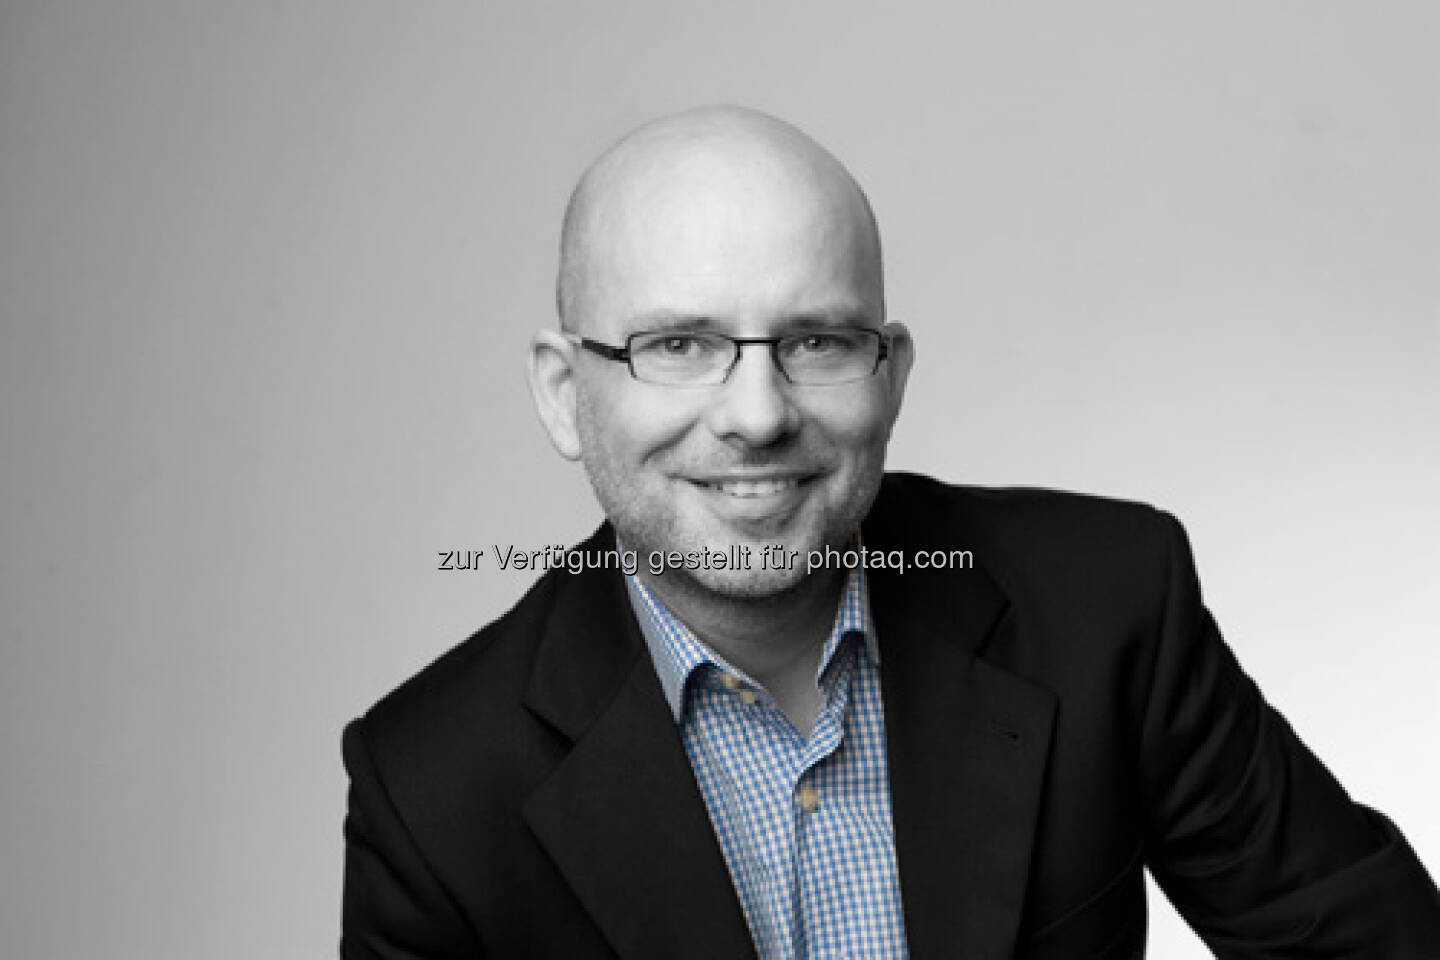 Thorsten Hahn, CEO & Founder Banking Lounge (22. Februar) - finanzmarktfoto.at wünscht alles Gute!